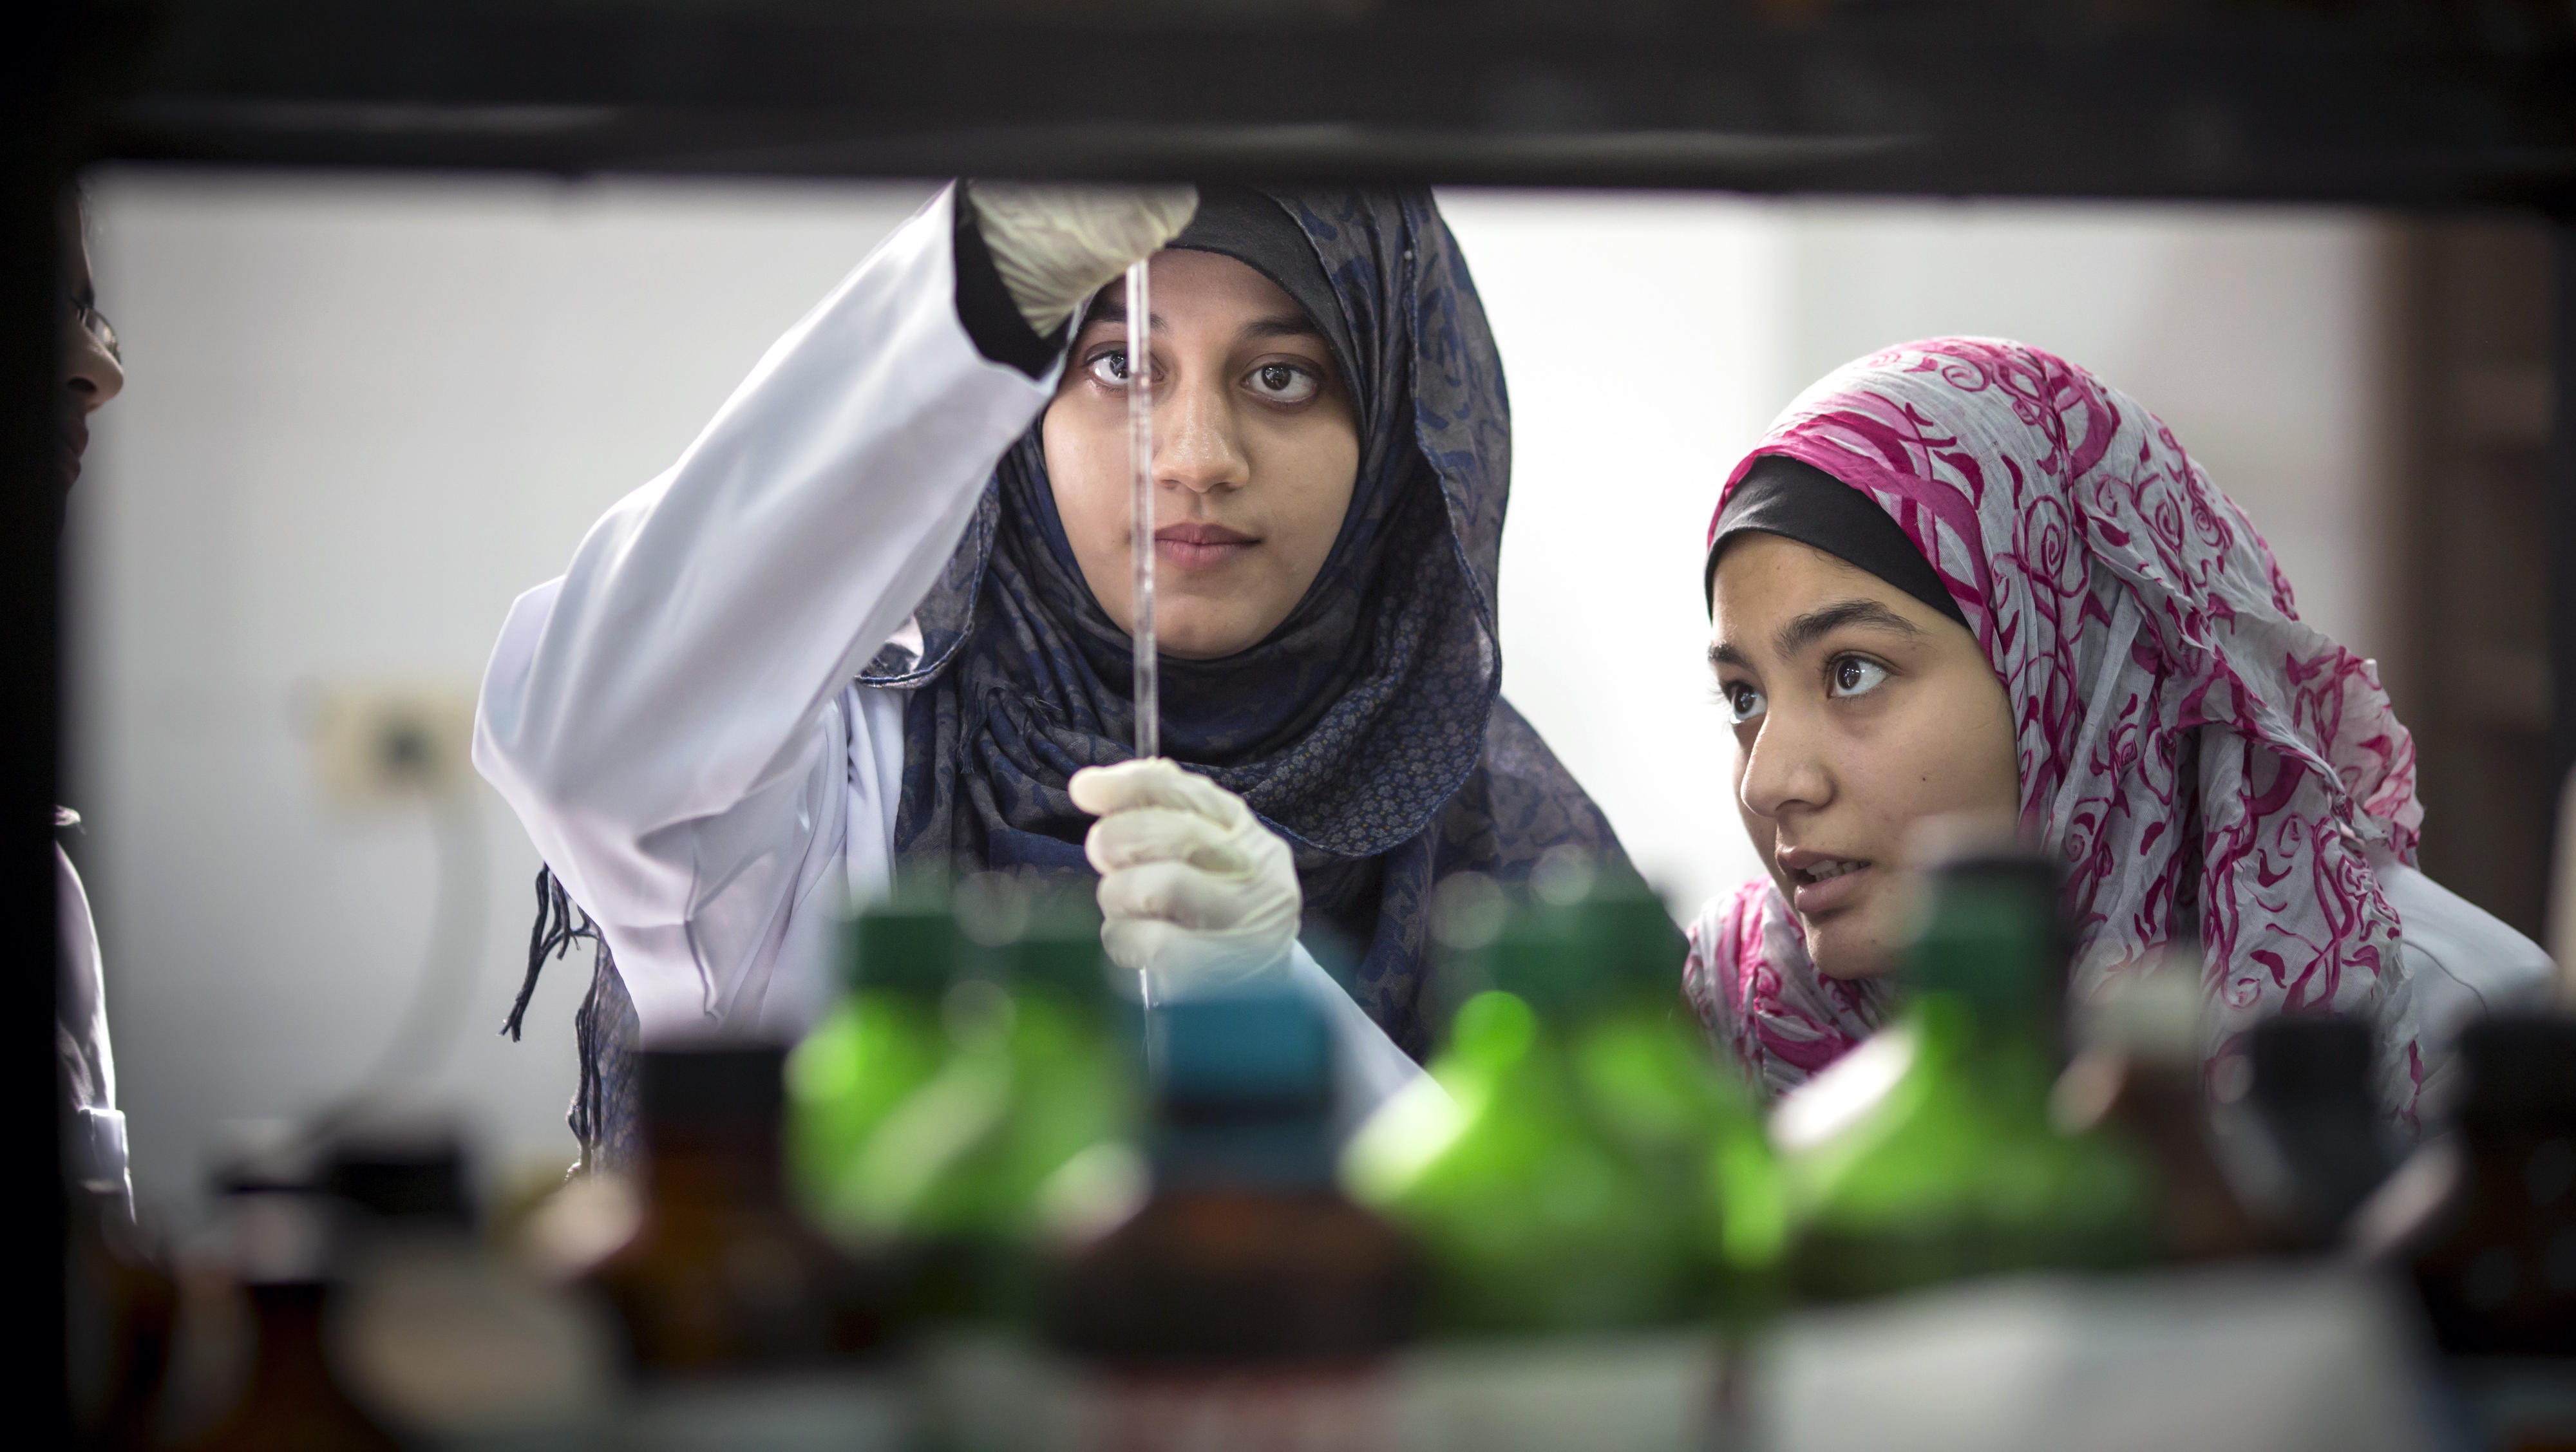 Pharmakologiestudentinnen in einem Labor an der Al-Azhar Universität in Gaza-Stadt. Eine der Frauen hält eine Pipette in Augenhöhe und schaut gemeinsam mit der anderen Studentin auf die Skala der Pipette.